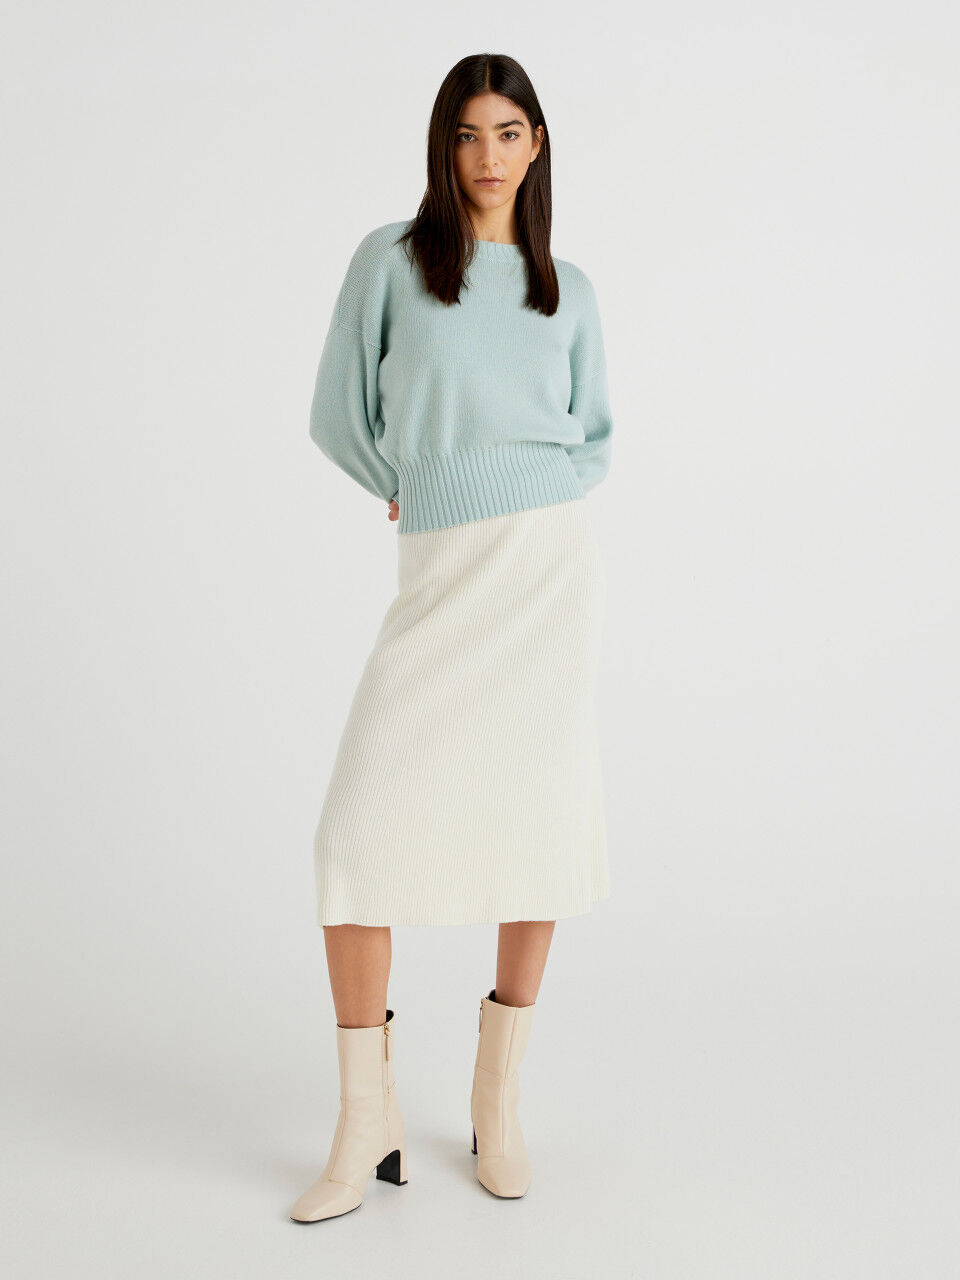 Midi skirt in linen blend